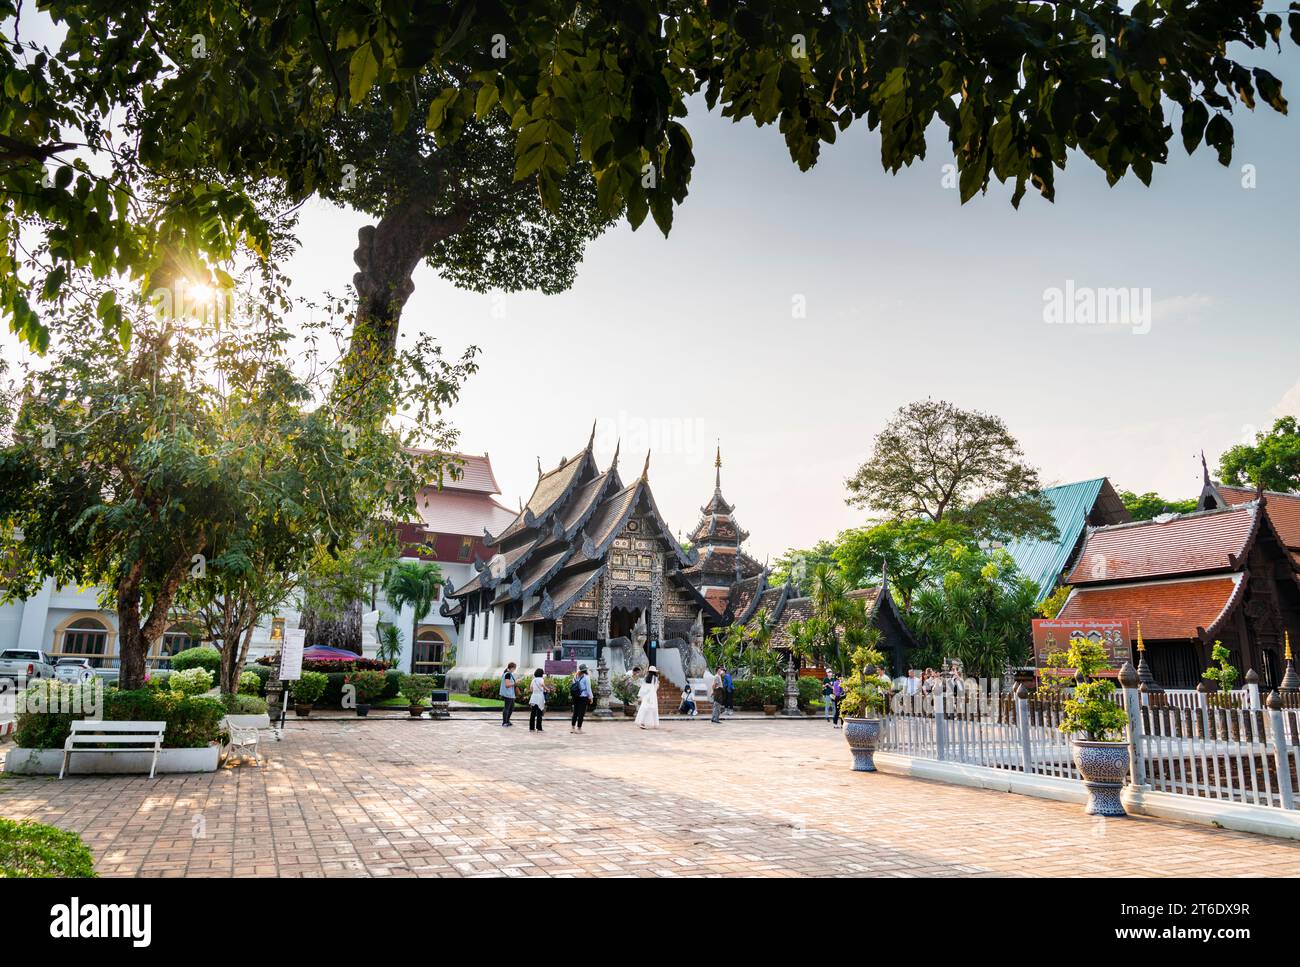 Chiang mai, Tailandia-20 marzo 2023: Il sole nel tardo pomeriggio sprofonda, all'esterno, l'antica struttura buddista in legno scolpito di Lanna, mentre la gente girovagava per la pace Foto Stock